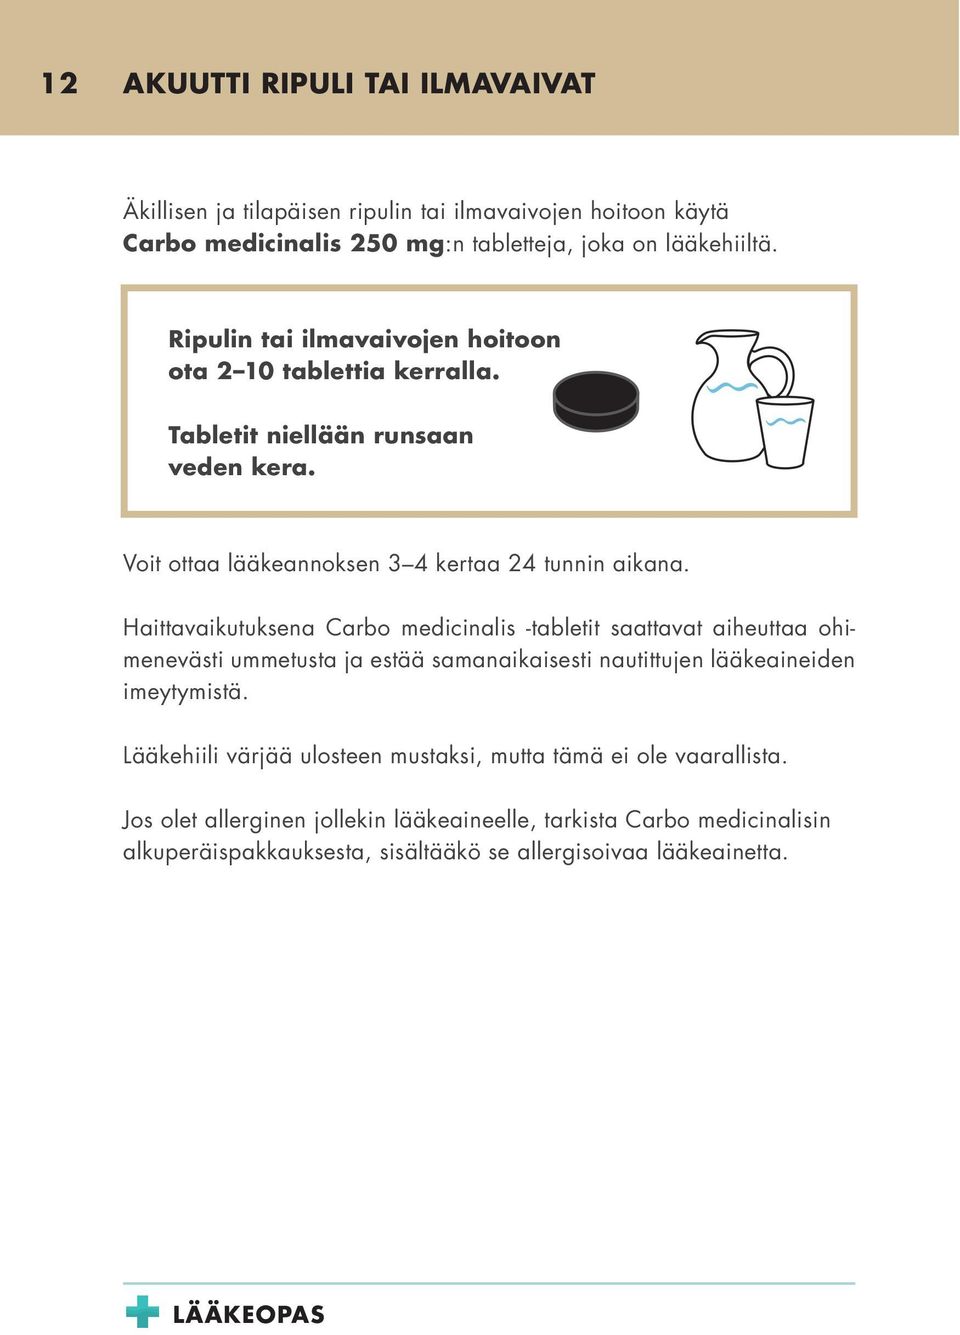 Haittavaikutuksena Carbo medicinalis -tabletit saattavat aiheuttaa ohimenevästi ummetusta ja estää samanaikaisesti nautittujen lääkeaineiden imeytymistä.